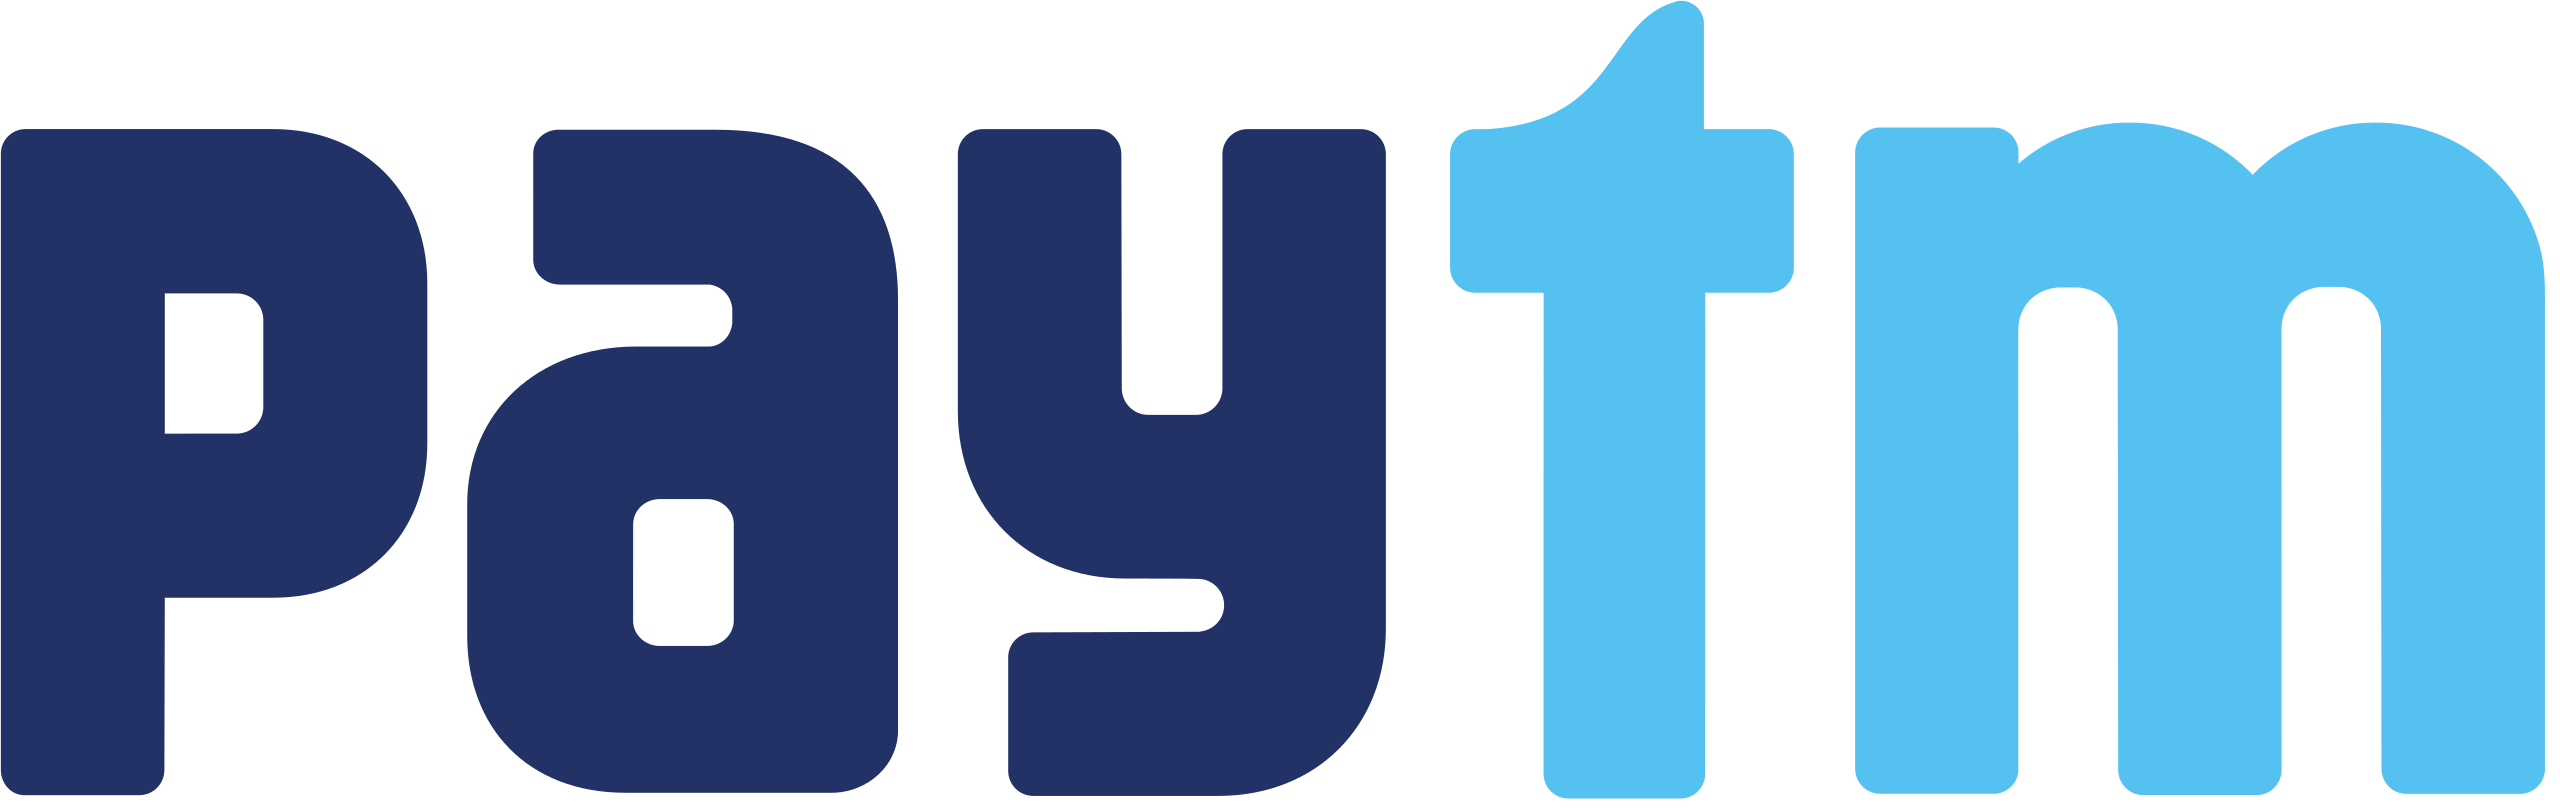 2560px paytm logo (standalone).svg